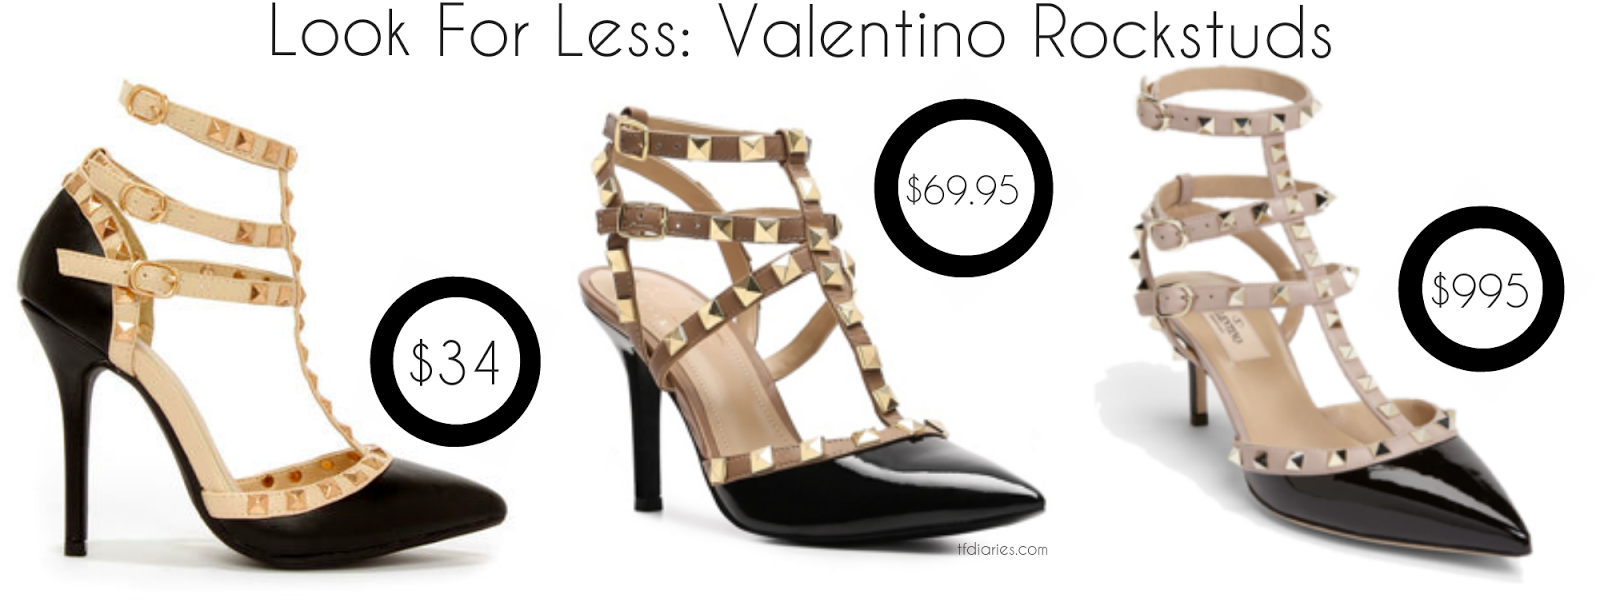 rockstud inspired heels, rockstuds under $50, designer look for less, designer inspired heels under $50